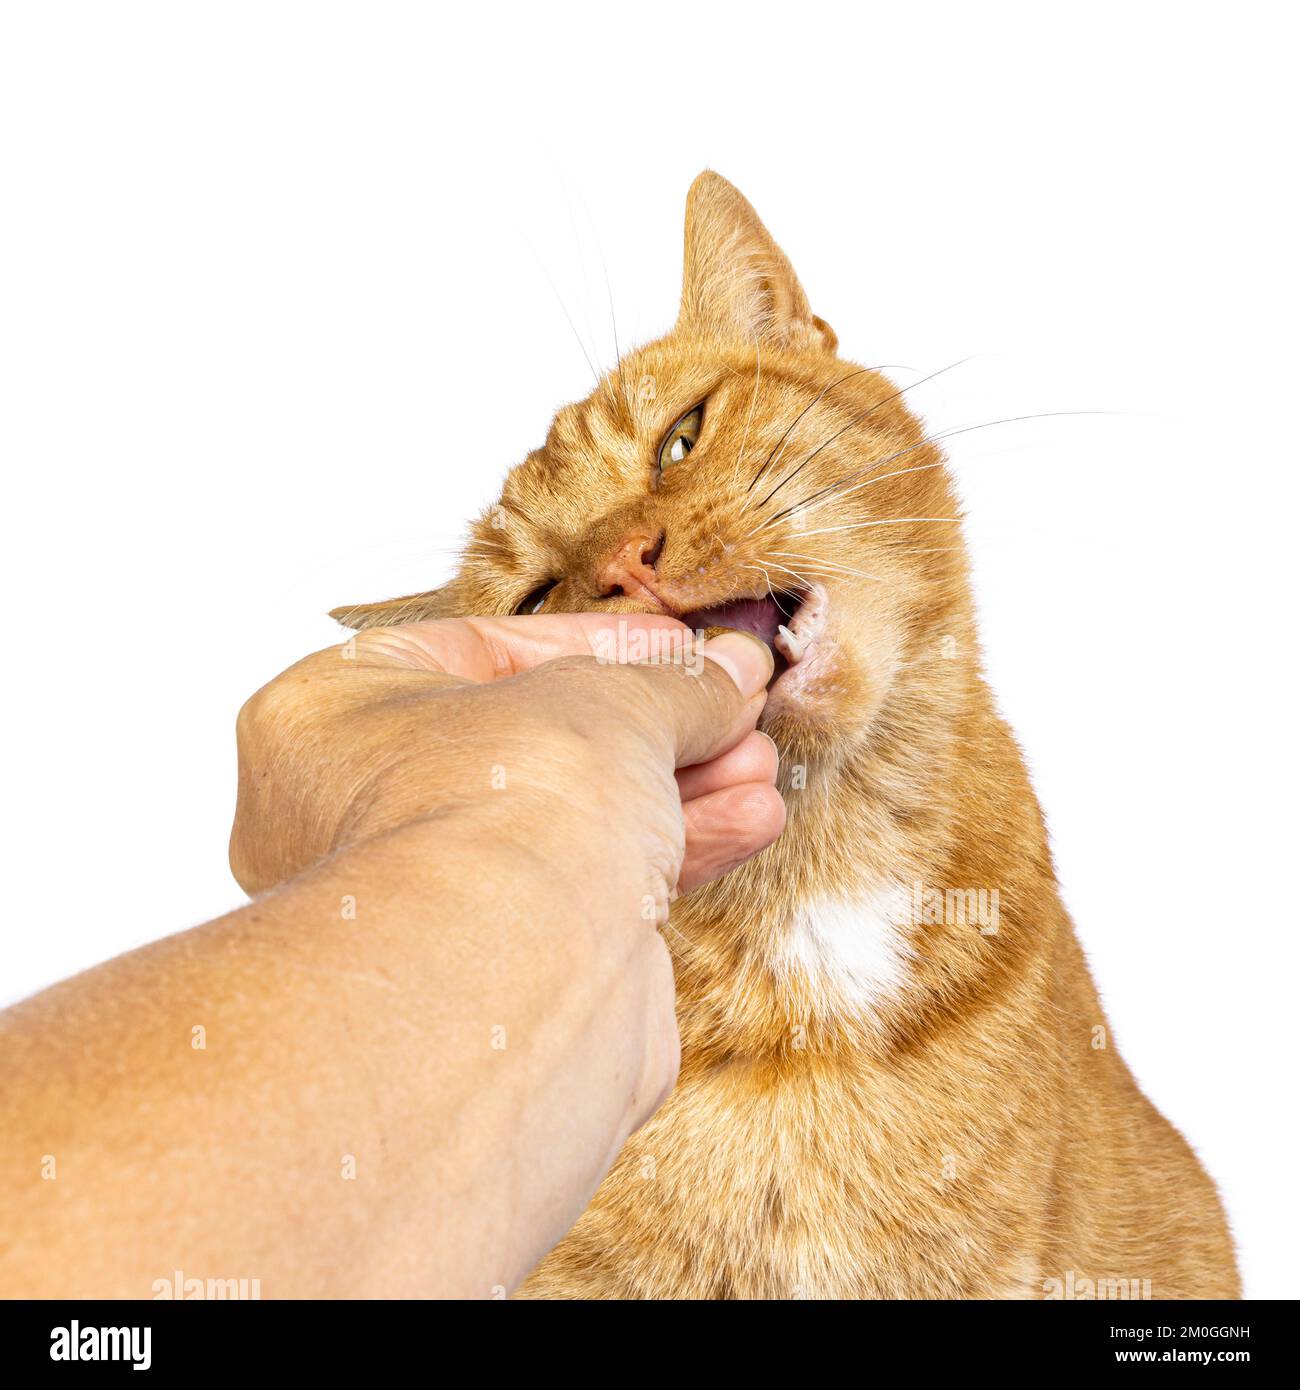 Photo de la tête d'un chat de maison senior au gingembre masculin, assis face à l'avant. La main humaine la féoding. Isolé sur un fond blanc. Banque D'Images